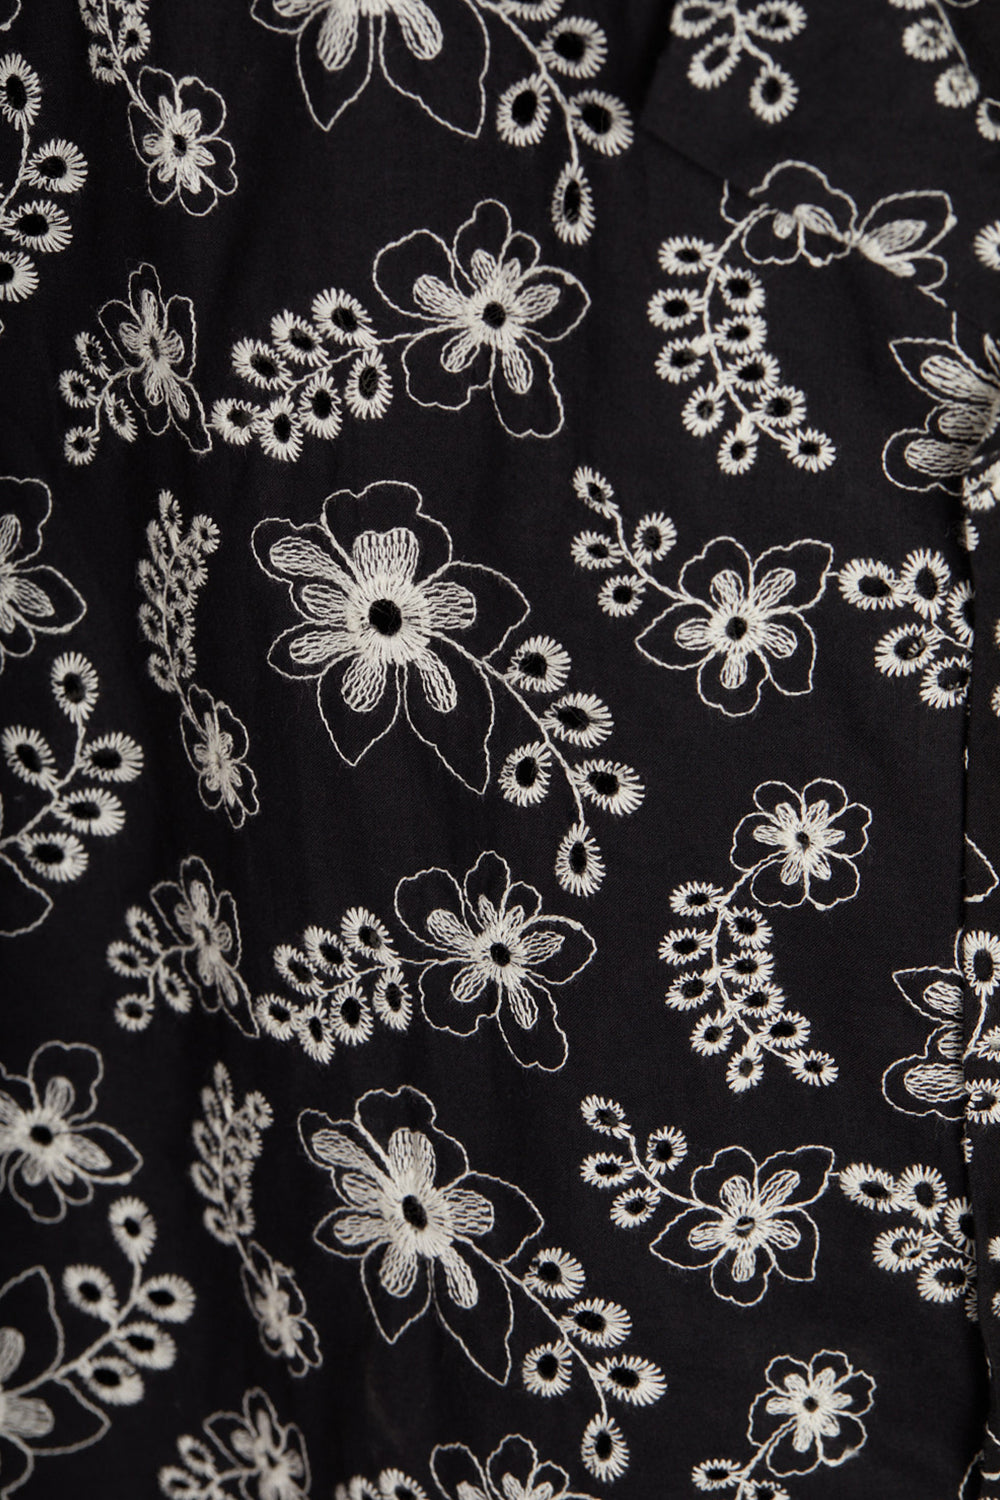 Portuguese Flannel Folclore 4 Shirt (Black)